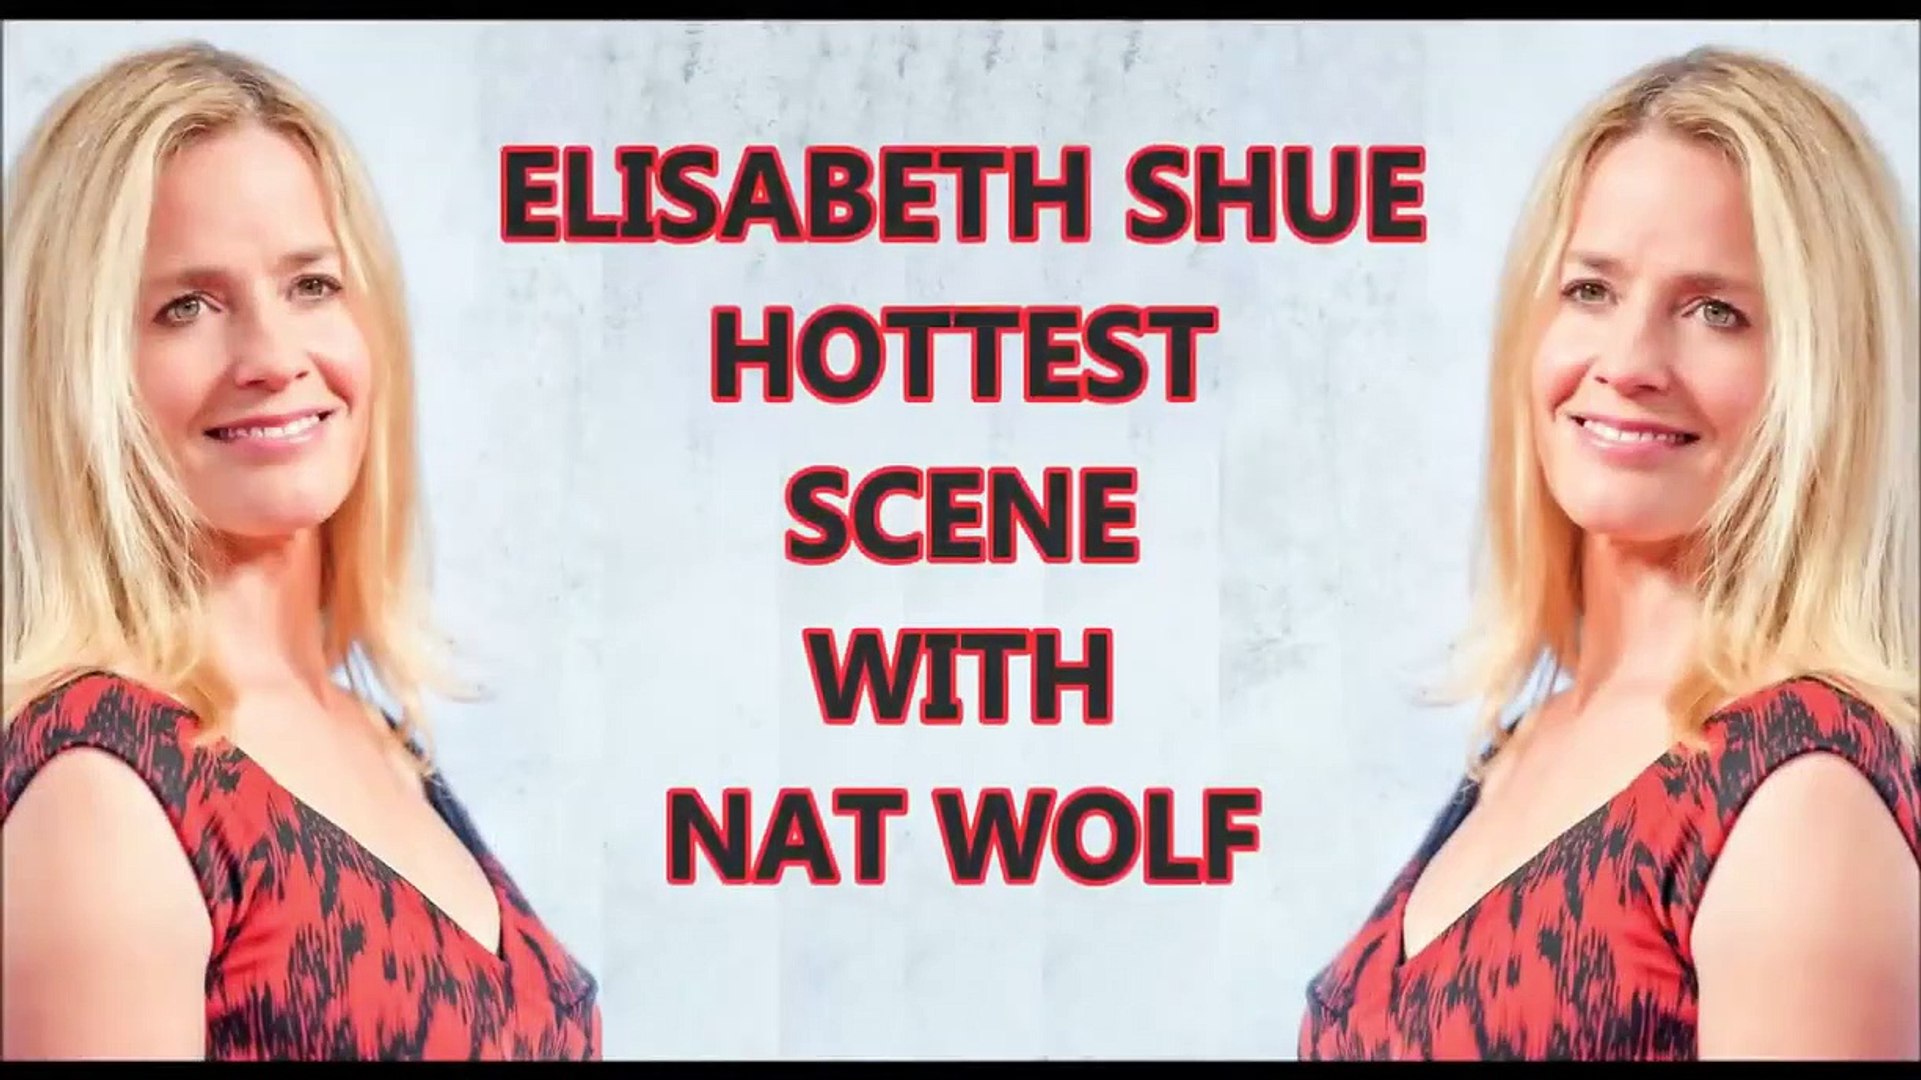 Shue hot elisabeth Elisabeth Shue